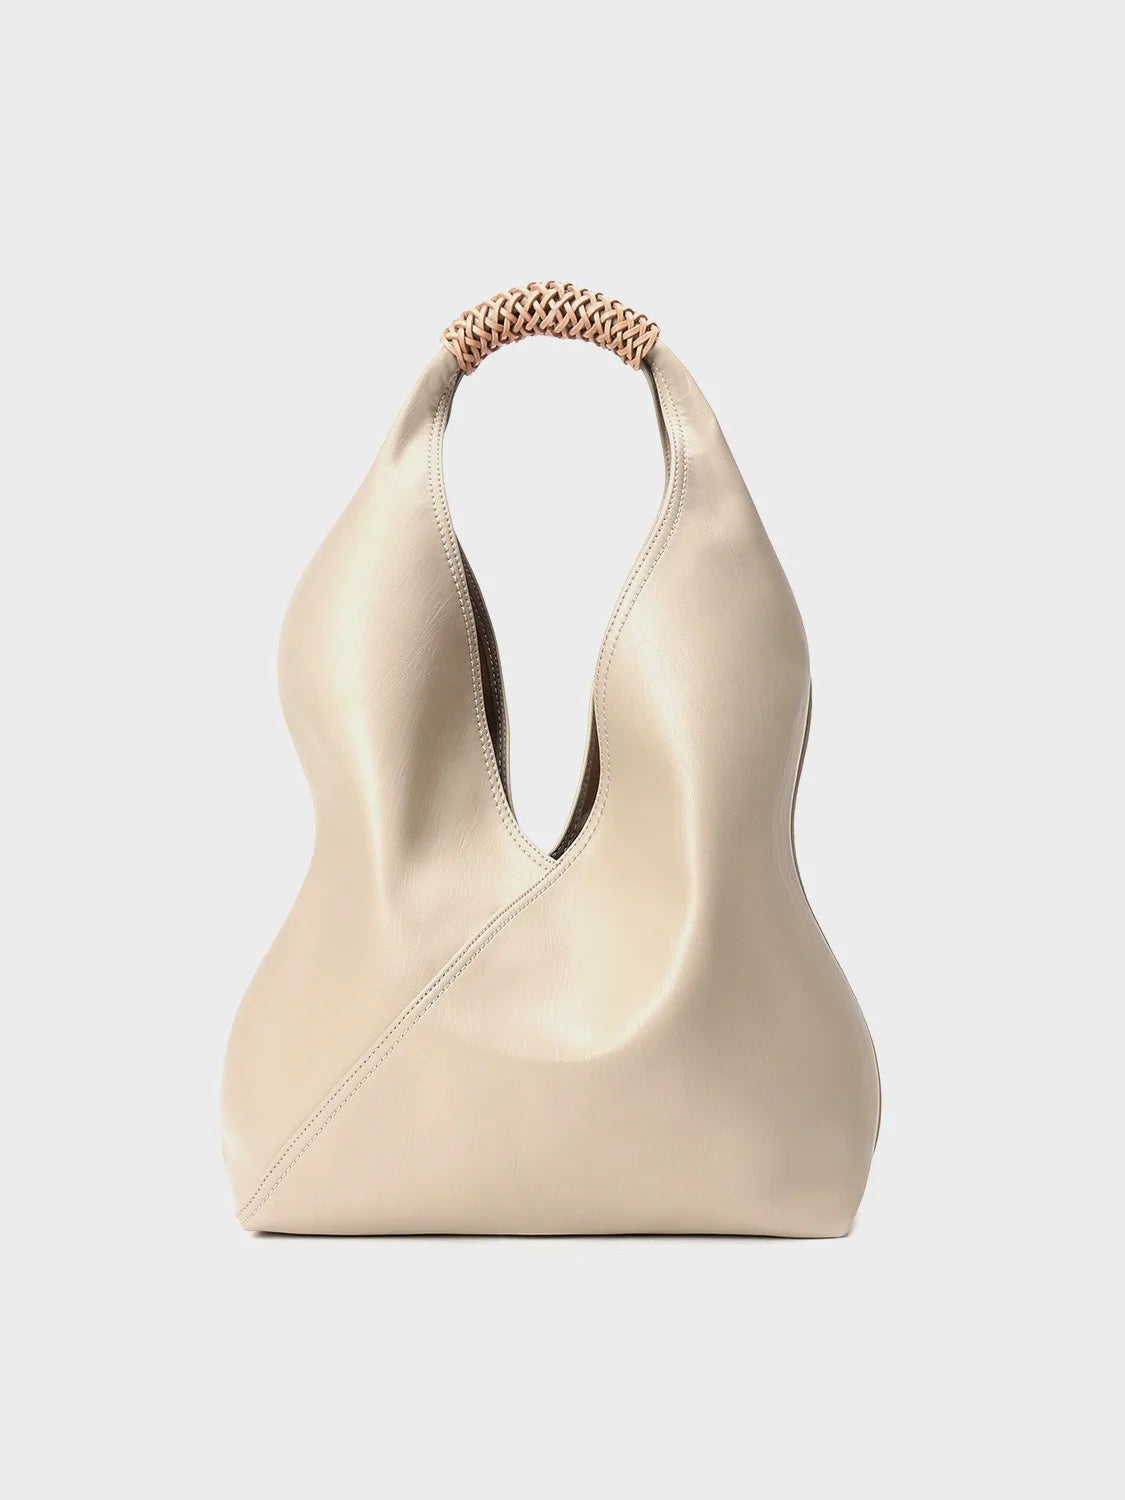 Hobo Bags- Genuine Leather Hobo Bag for Elegant Occasions- khaki white- Chuzko Women Clothing